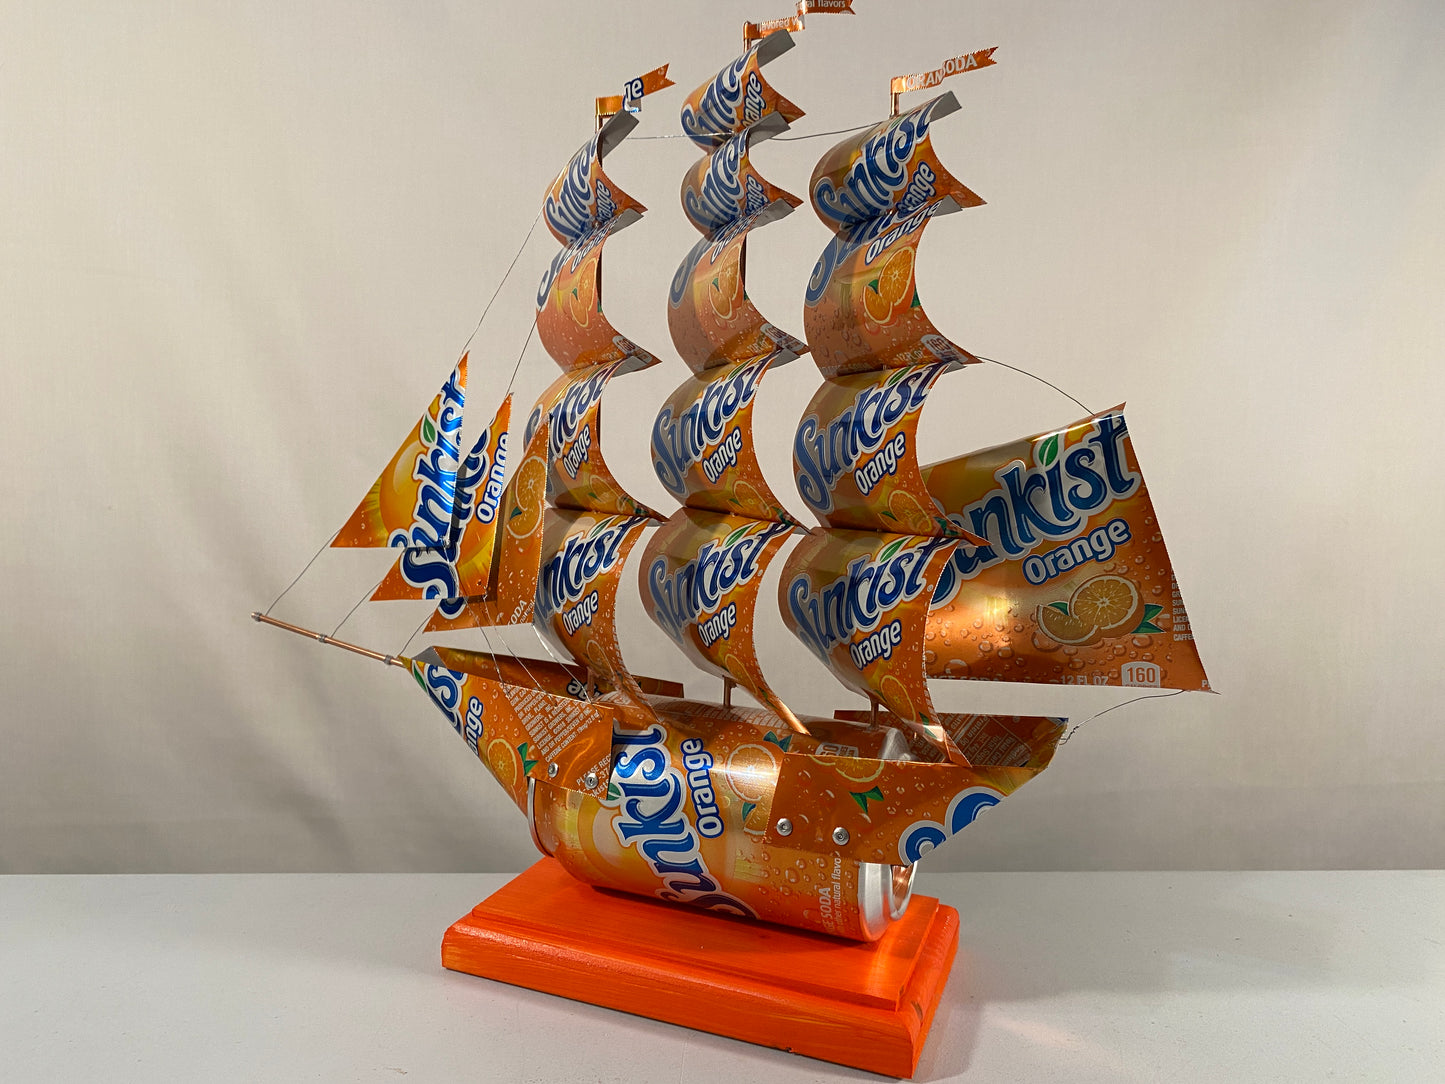 Sunkist Orange Soda Can Ship